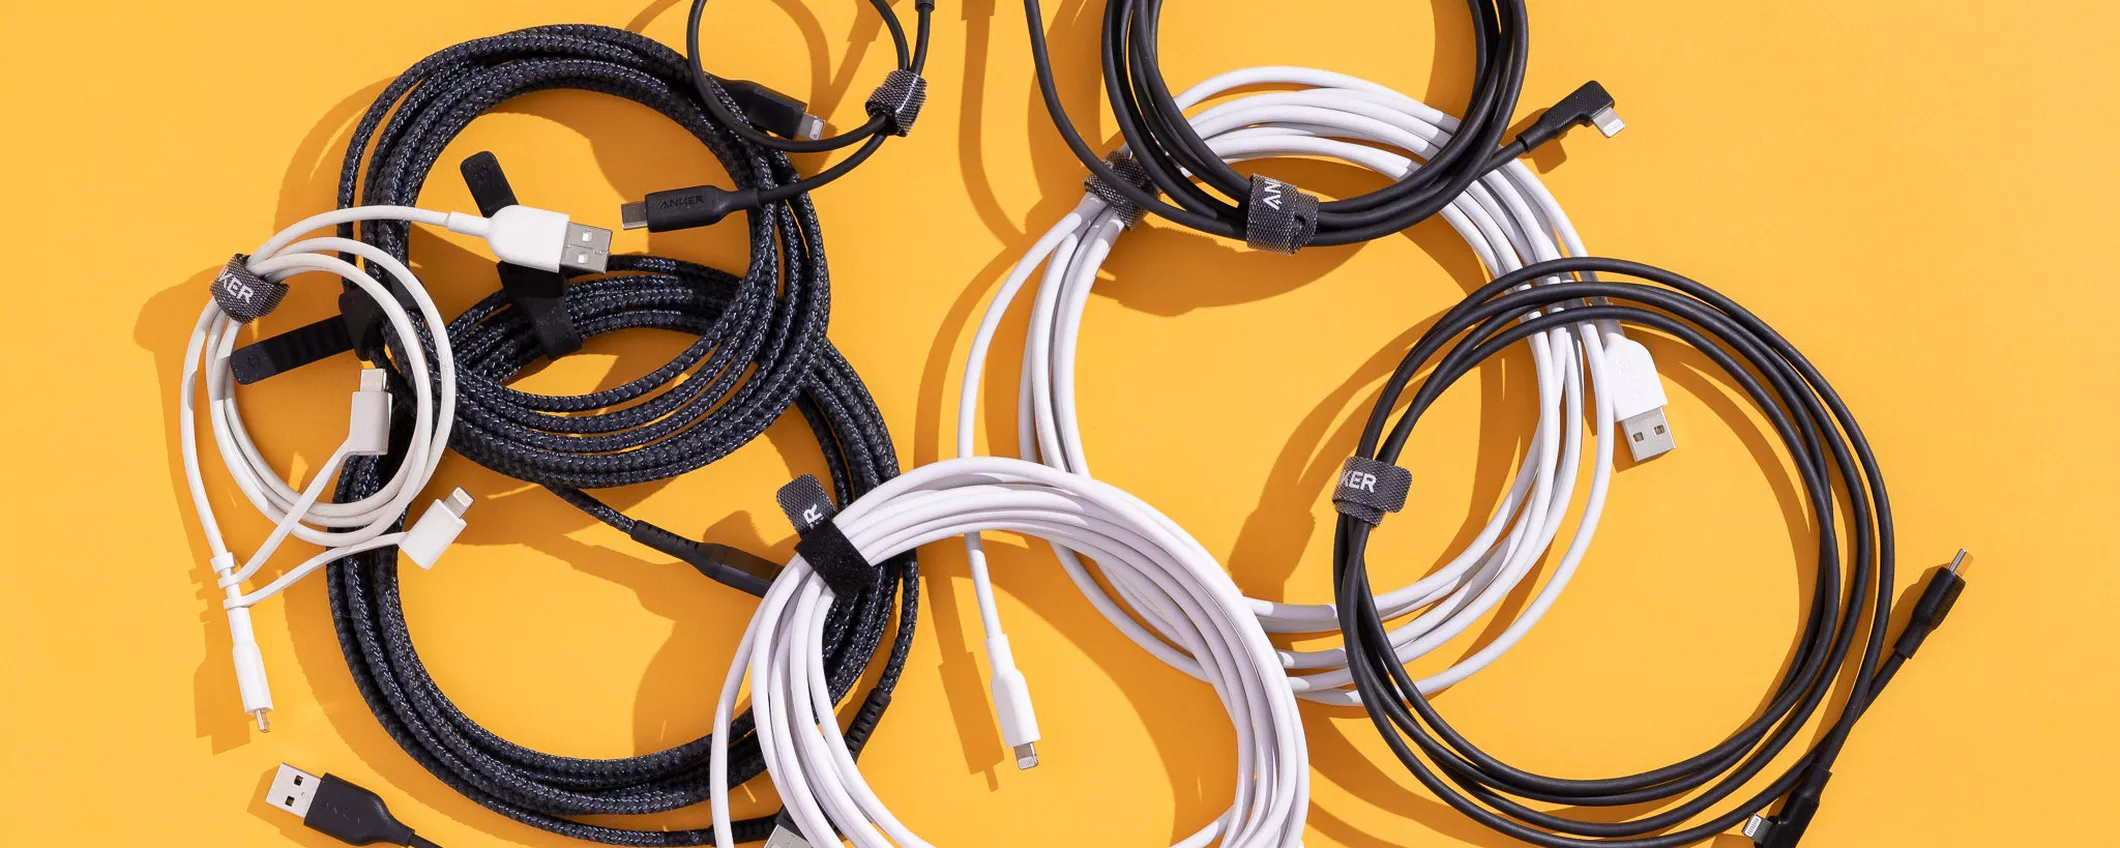 I migliori cavi USB in offerta su Amazon: prezzi da bancarella dell'usato